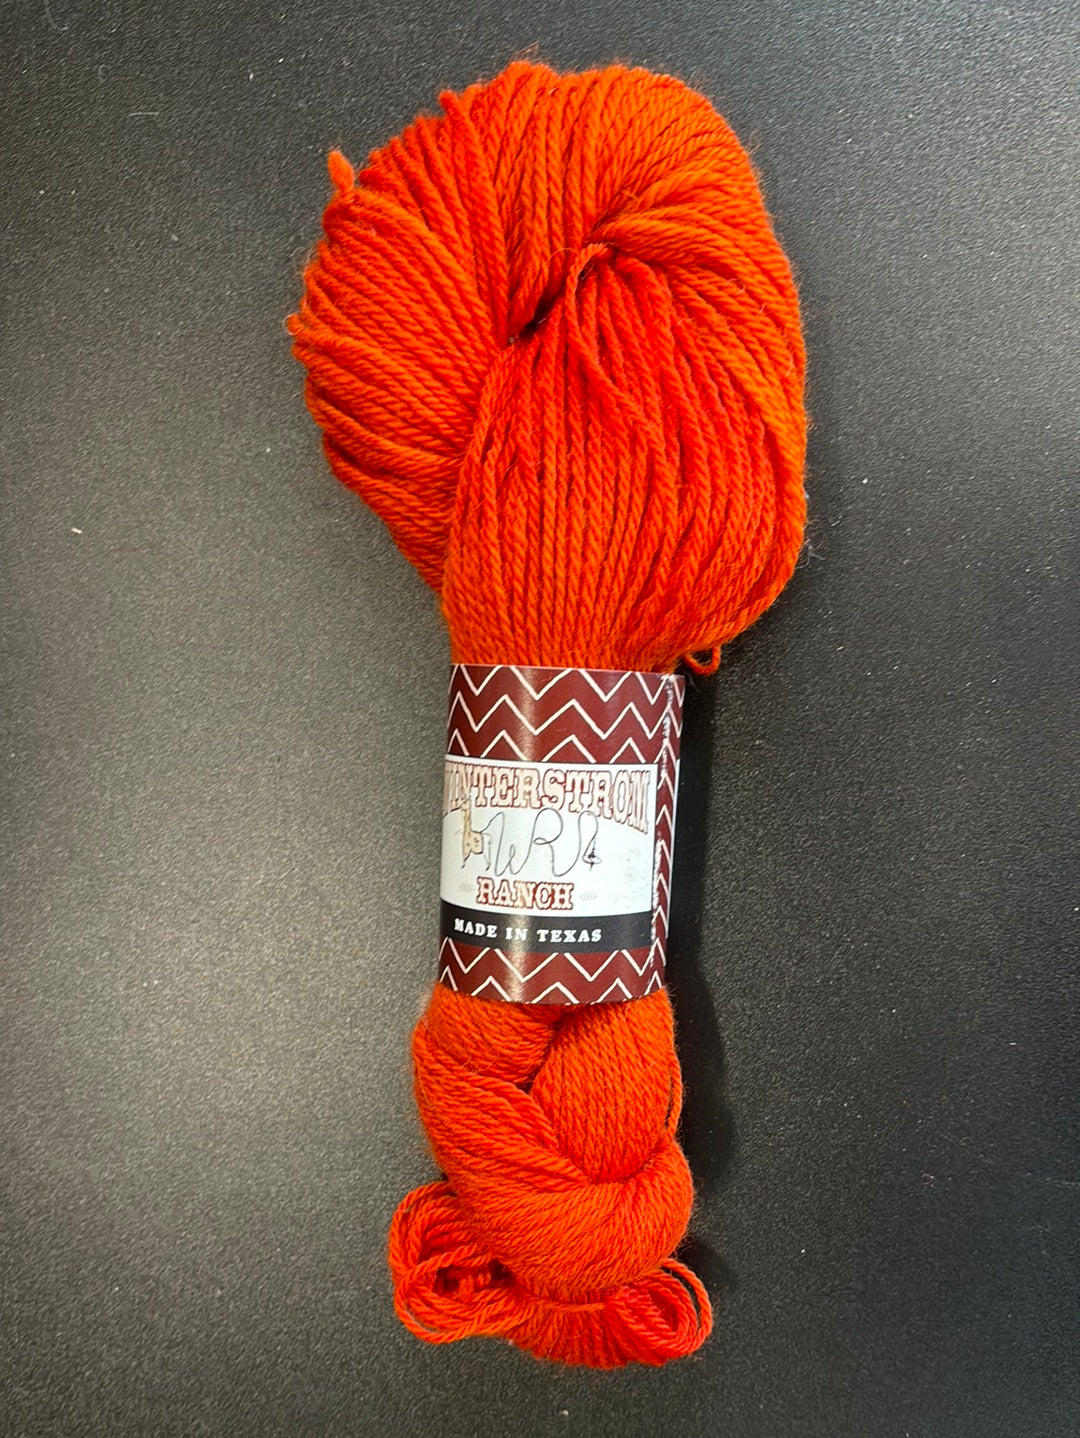 Bright orange yarn